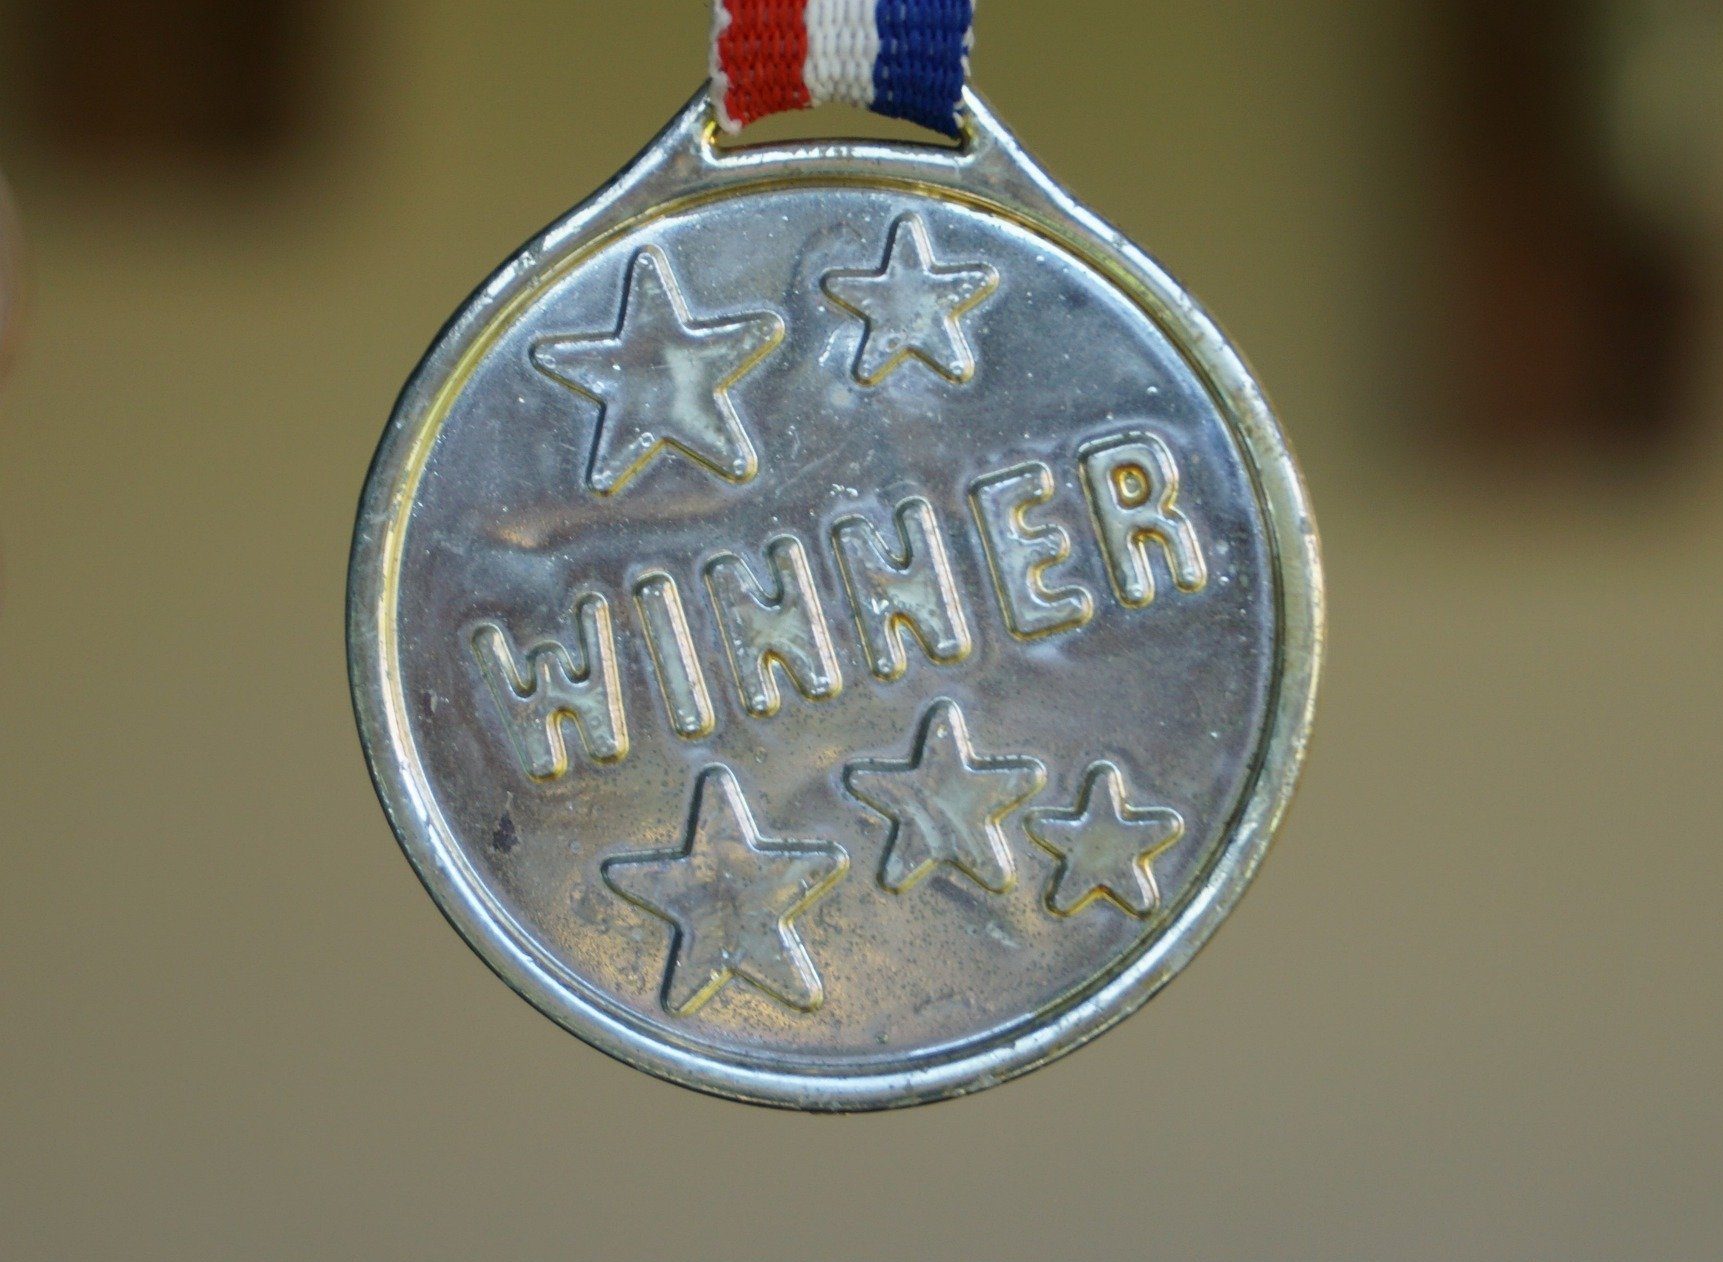 A winner's medal.